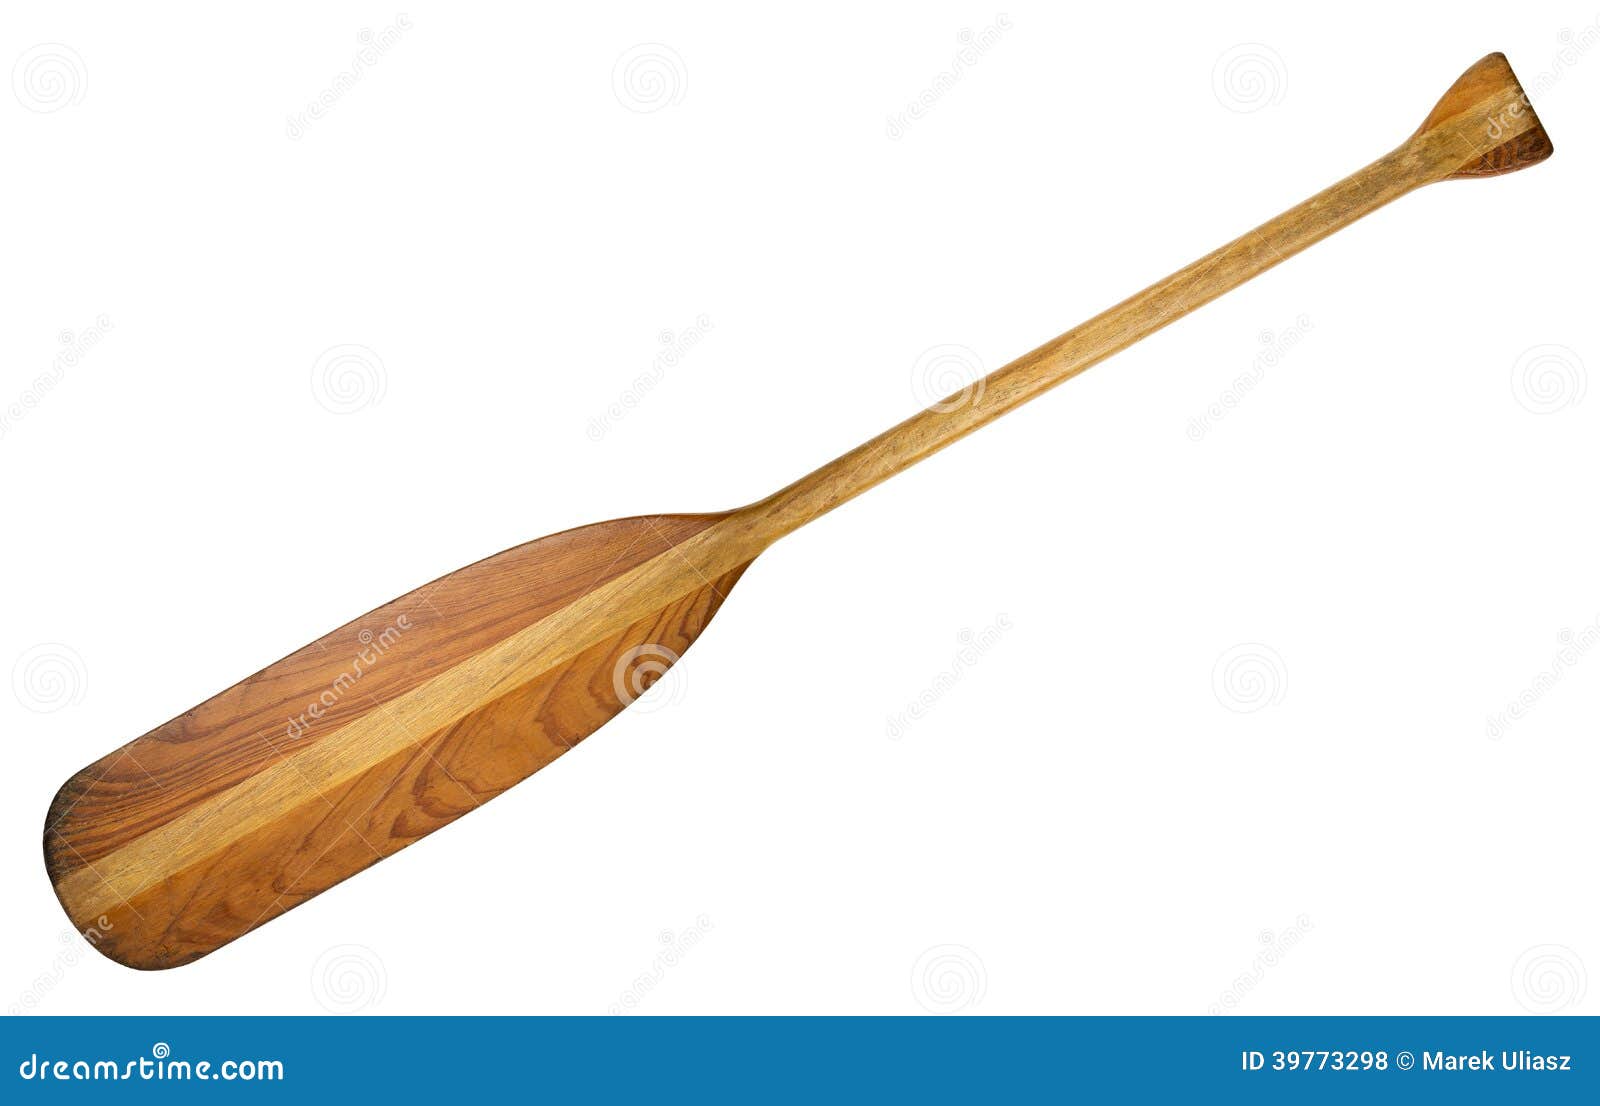 Wooden Canoe Paddle Stock Photo - Image: 39773298